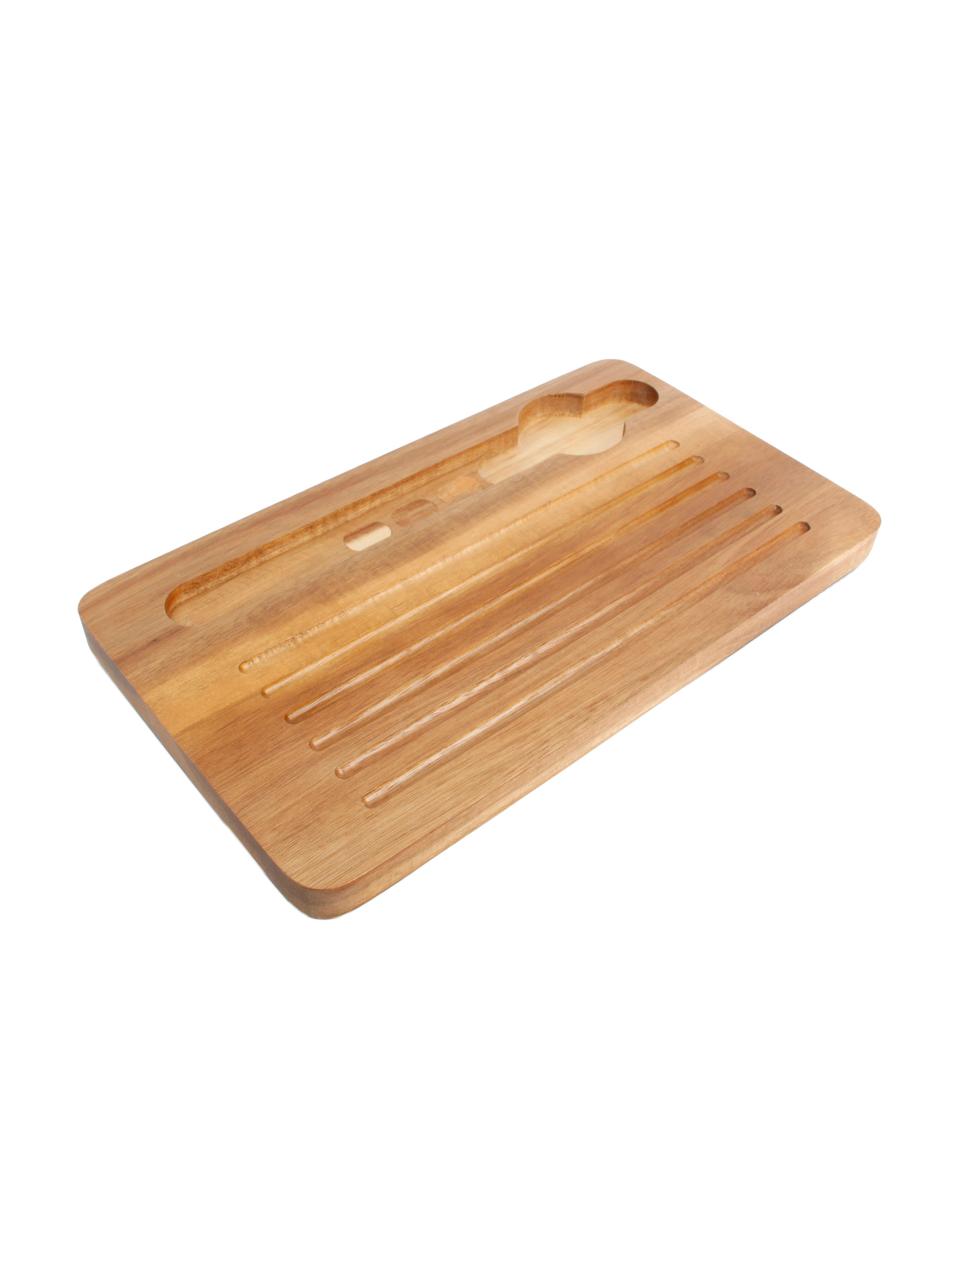 Sada chlebníku s víkem z akátového dřeva a nožem, 3 díly, Akátové dřevo, umělá hmota (ABS), nerezová ocel, dřevo, Černá, akátové dřevo, stříbrná, Š 27 cm, V 19 cm